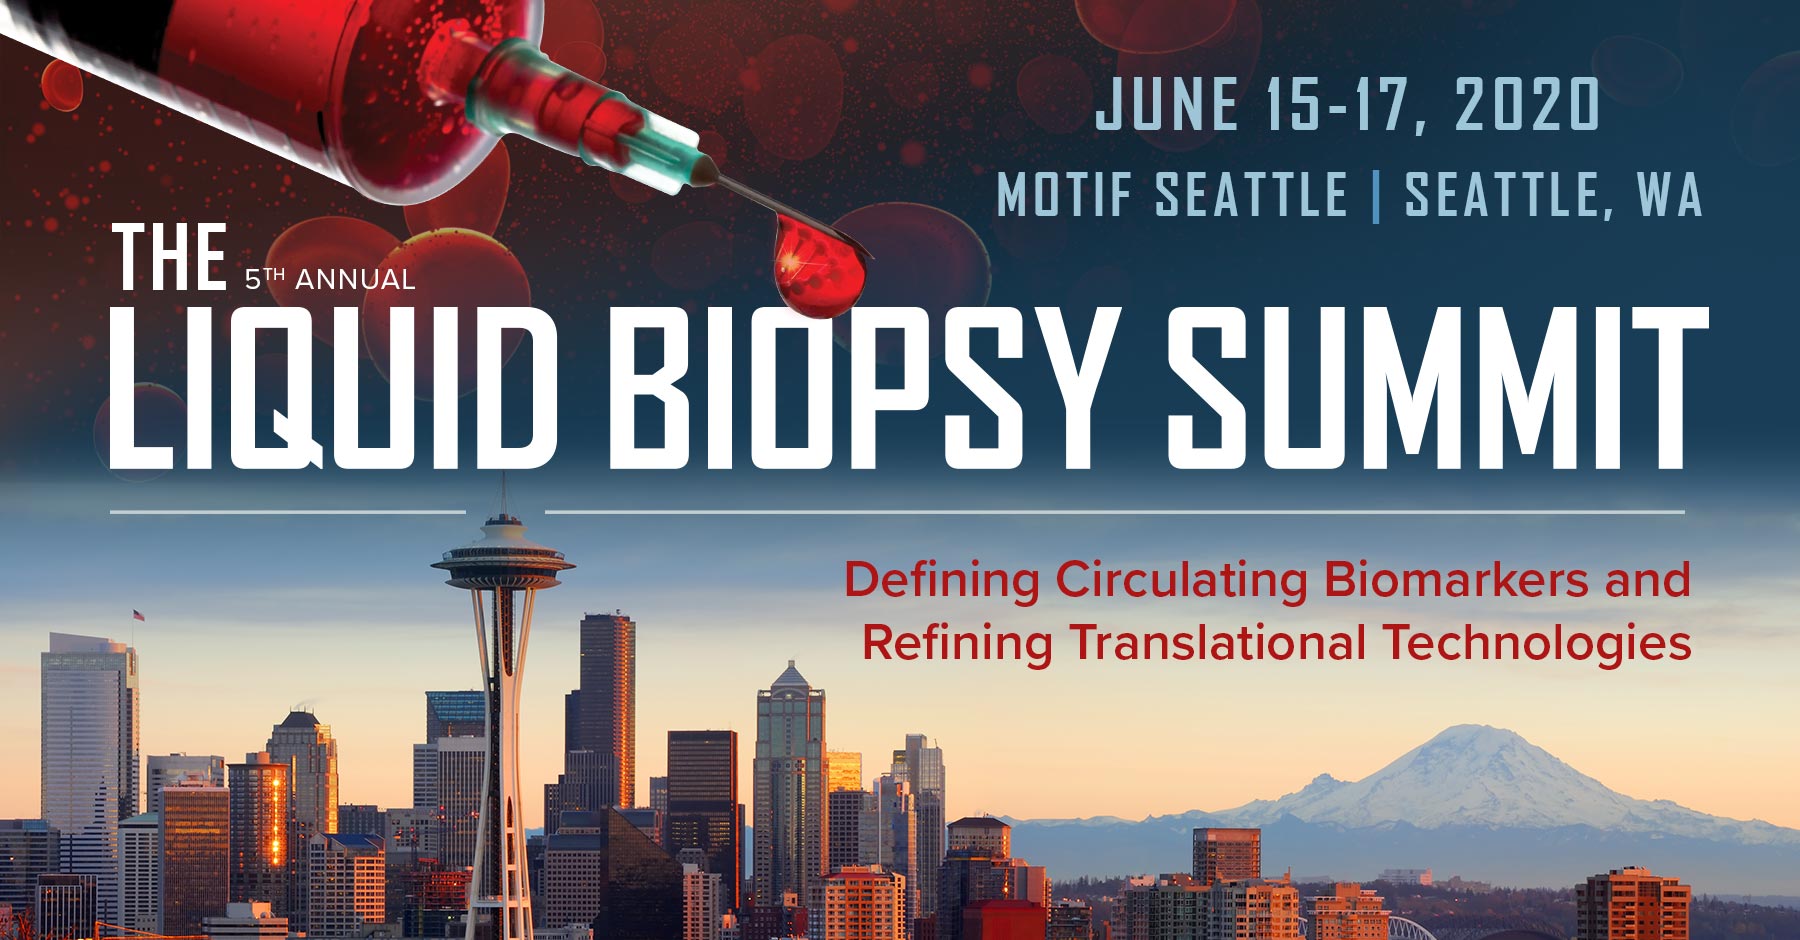 The Liquid Biopsy Summit